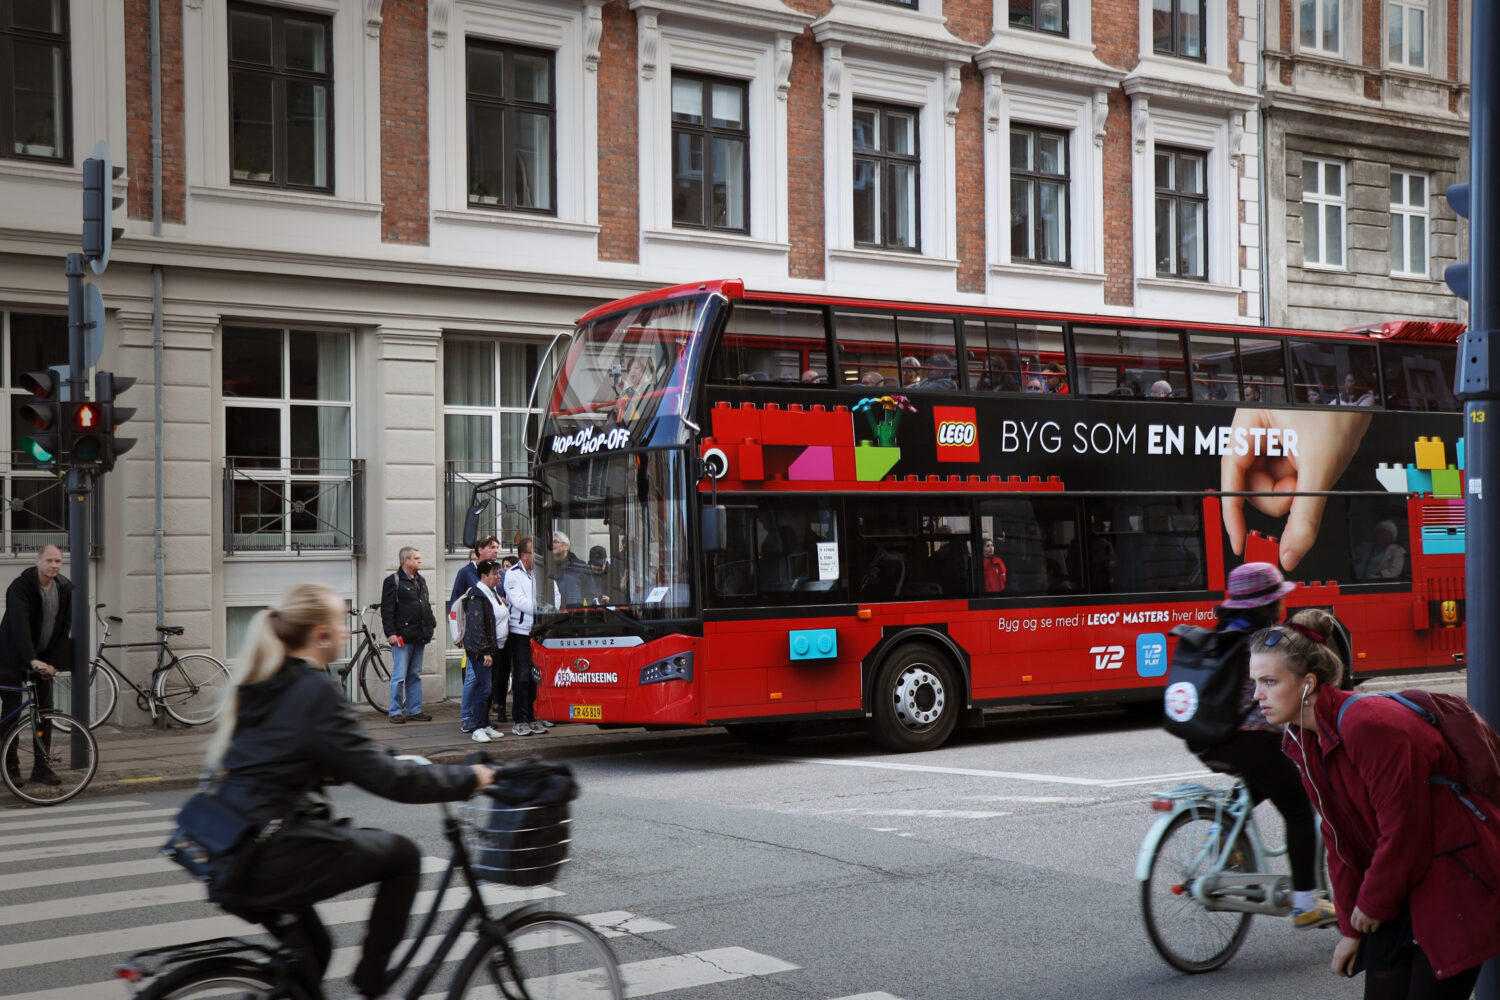 Busreklame for LEGO 'Byg som en mester' på en dobbeltdækker sightseeing-bus i Københavns centrum